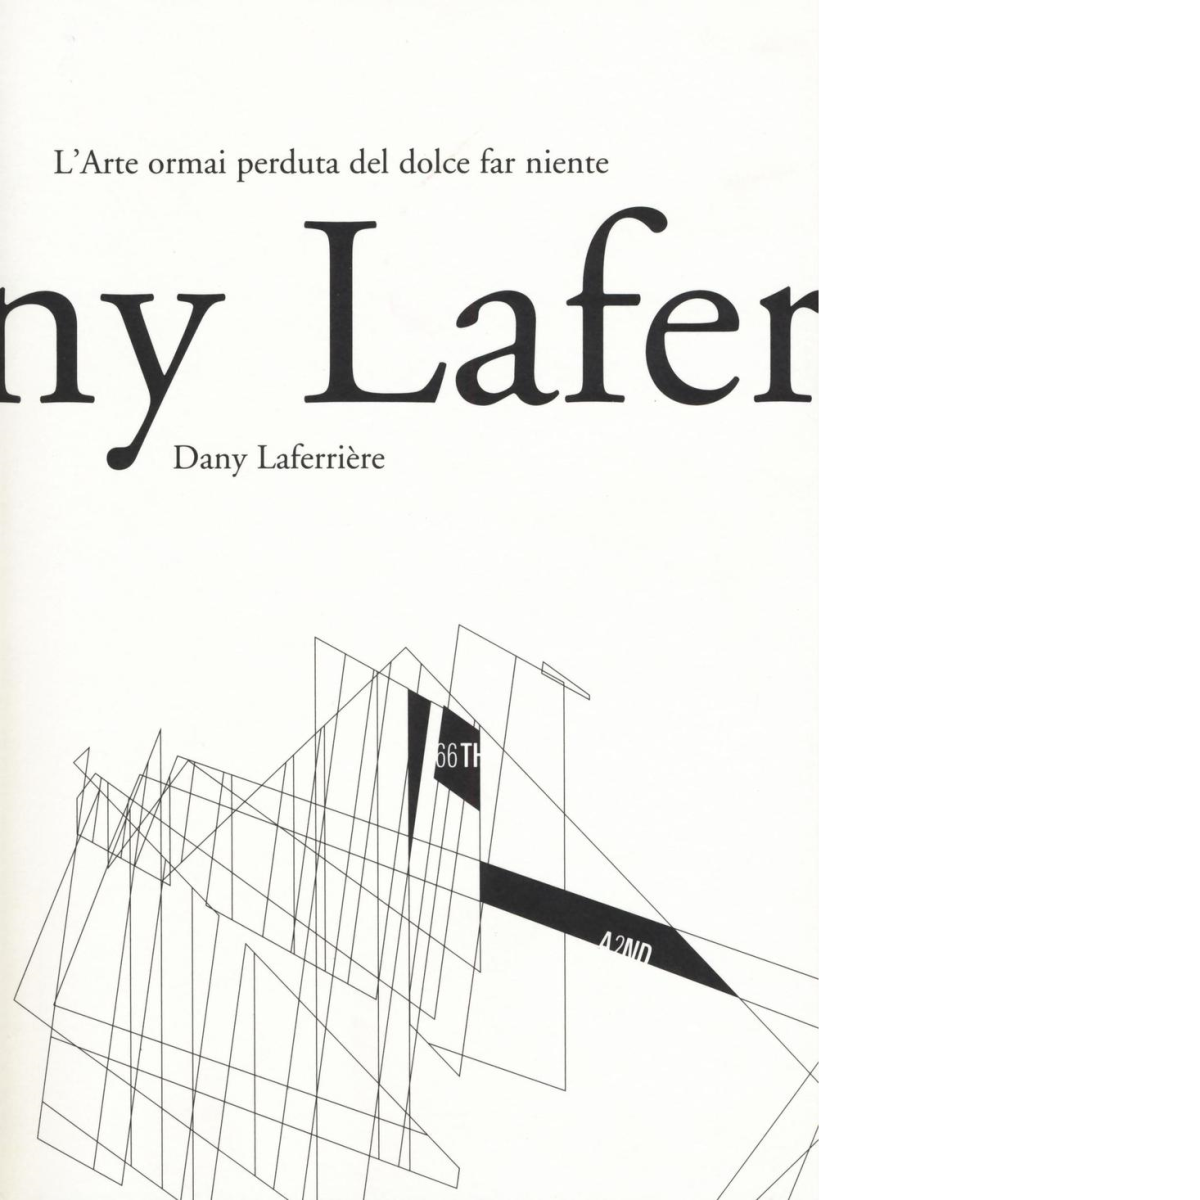 L'arte ormai perduta del dolce far niente di Dany Laferri?re,  2016,  66th And 2 libro usato